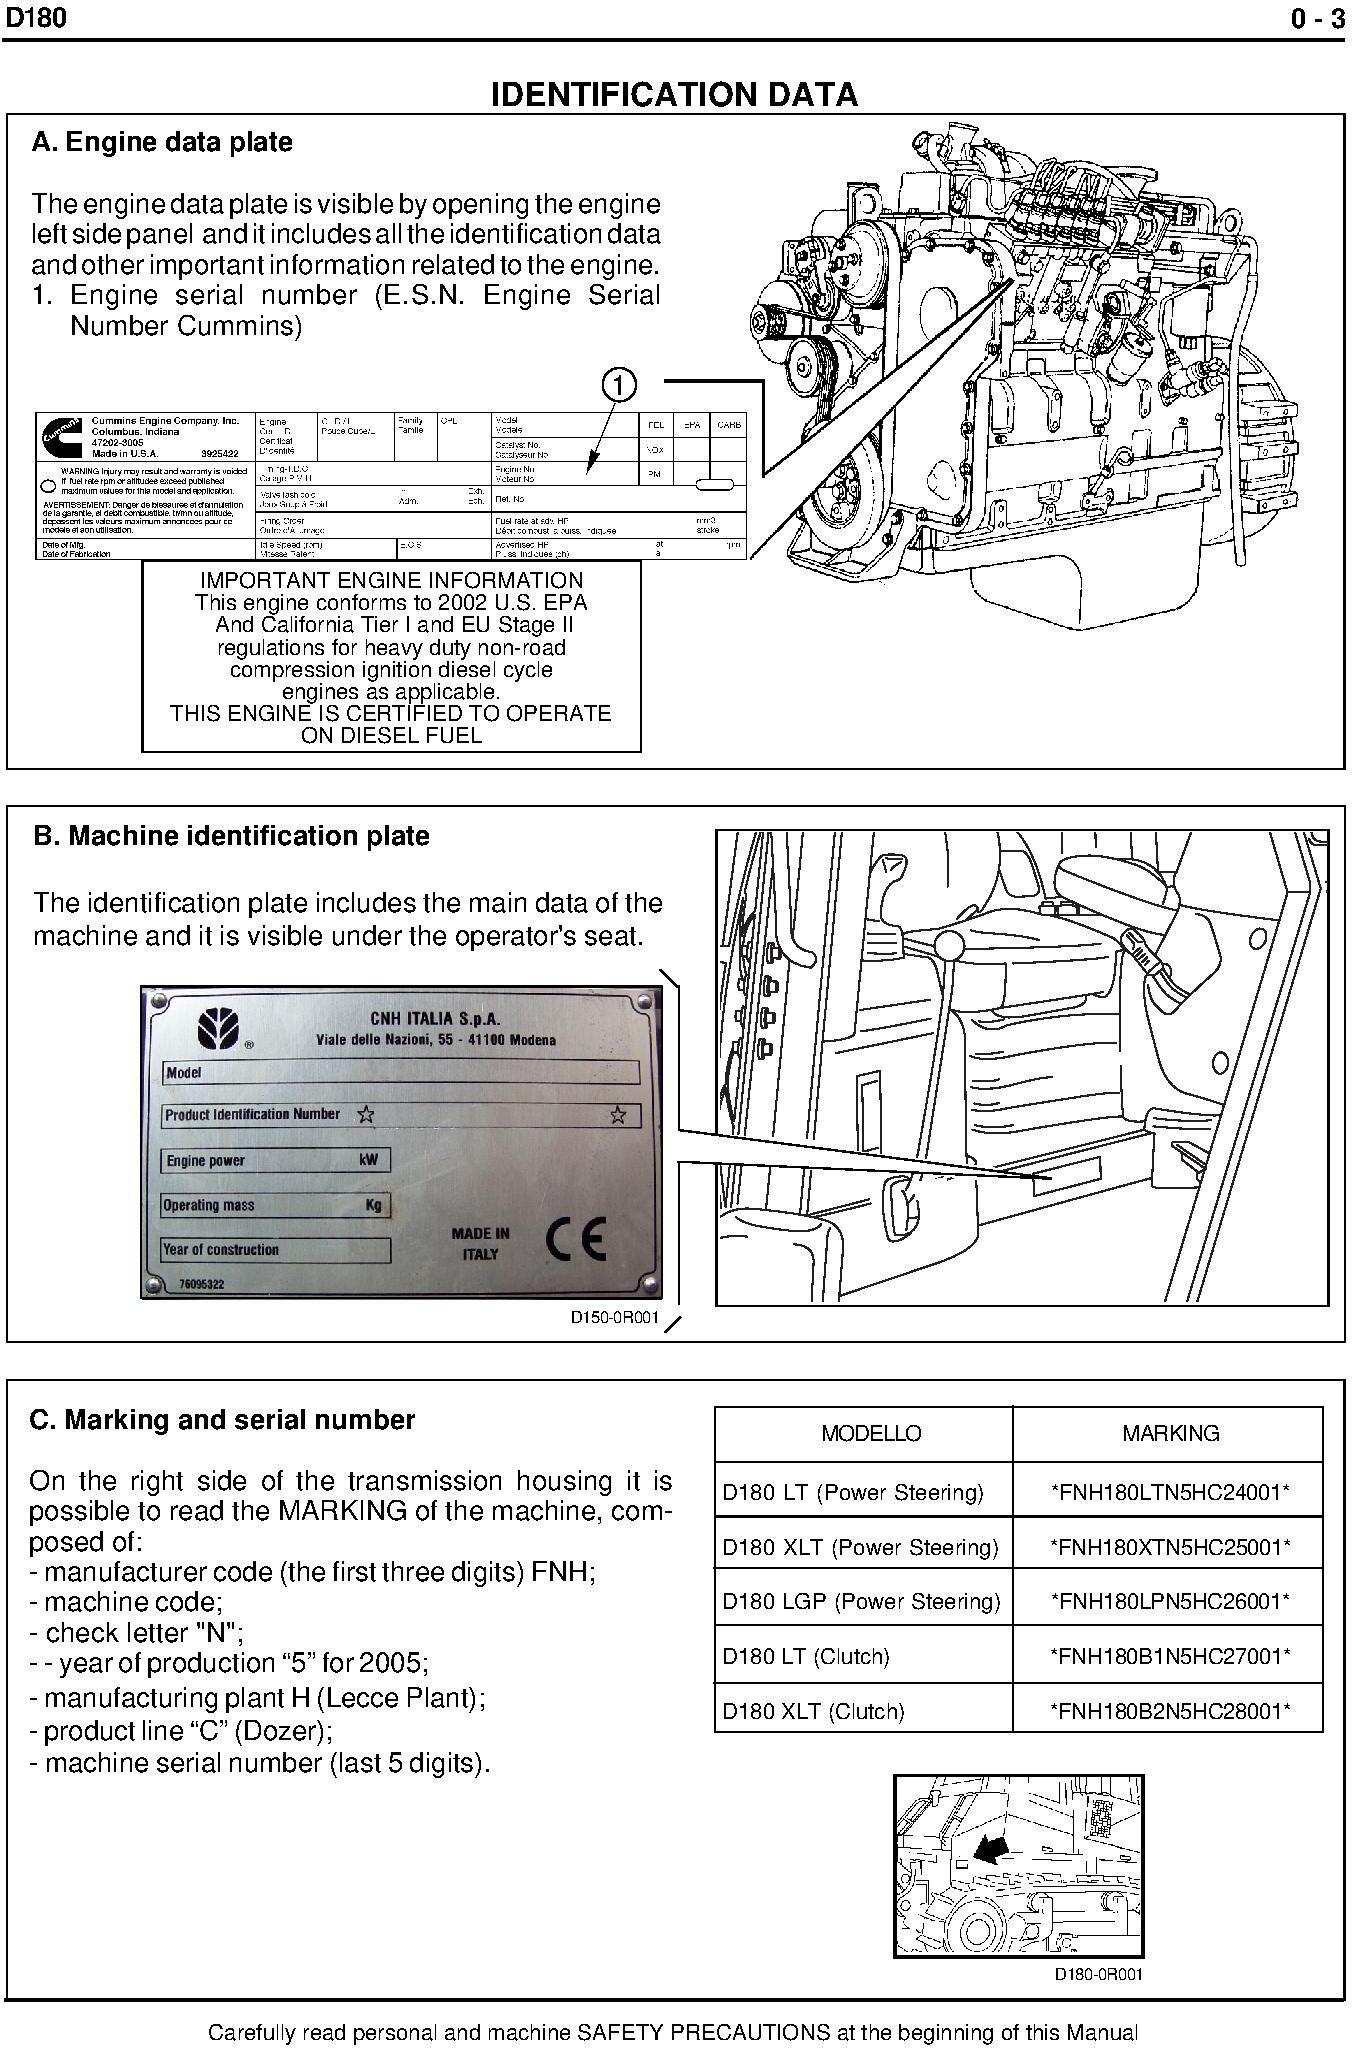 New Holland D180 Crawler Dozer Service Manual - 1